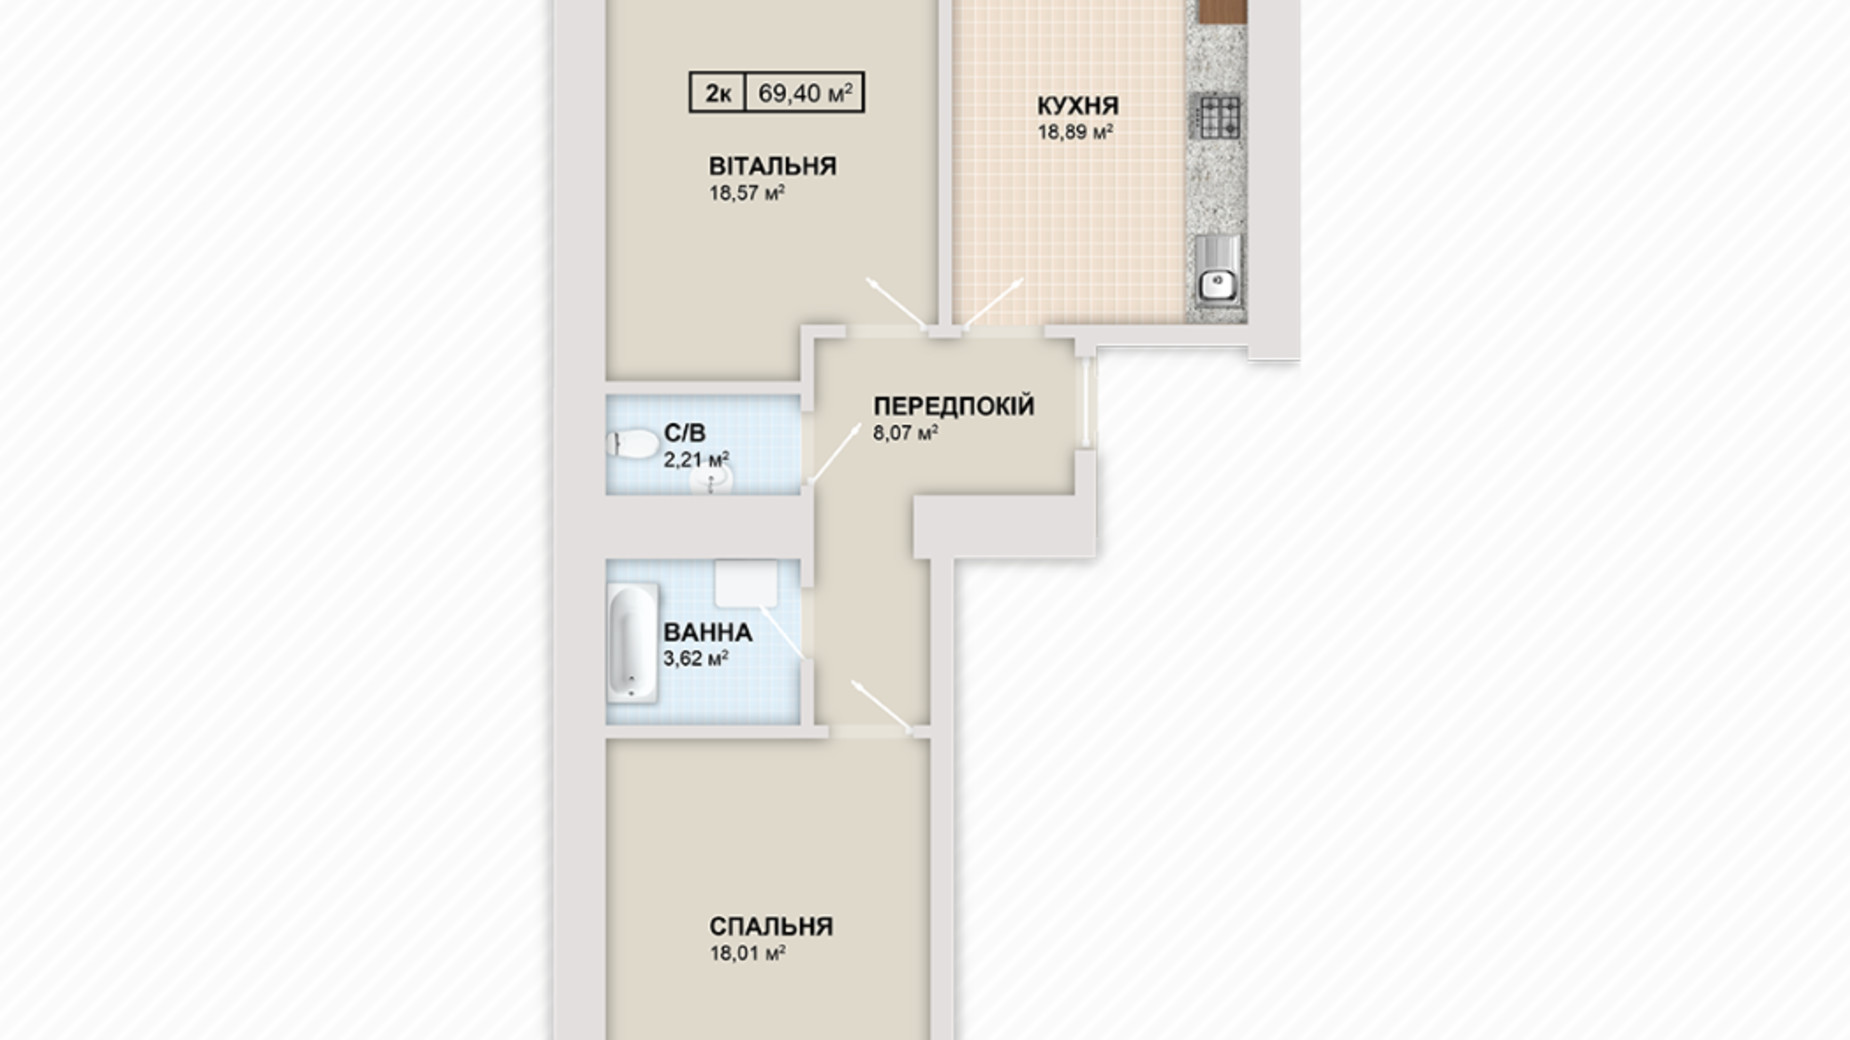 Планировка 2-комнатной квартиры в ЖК Містечко Козацьке 69.4 м², фото 453728